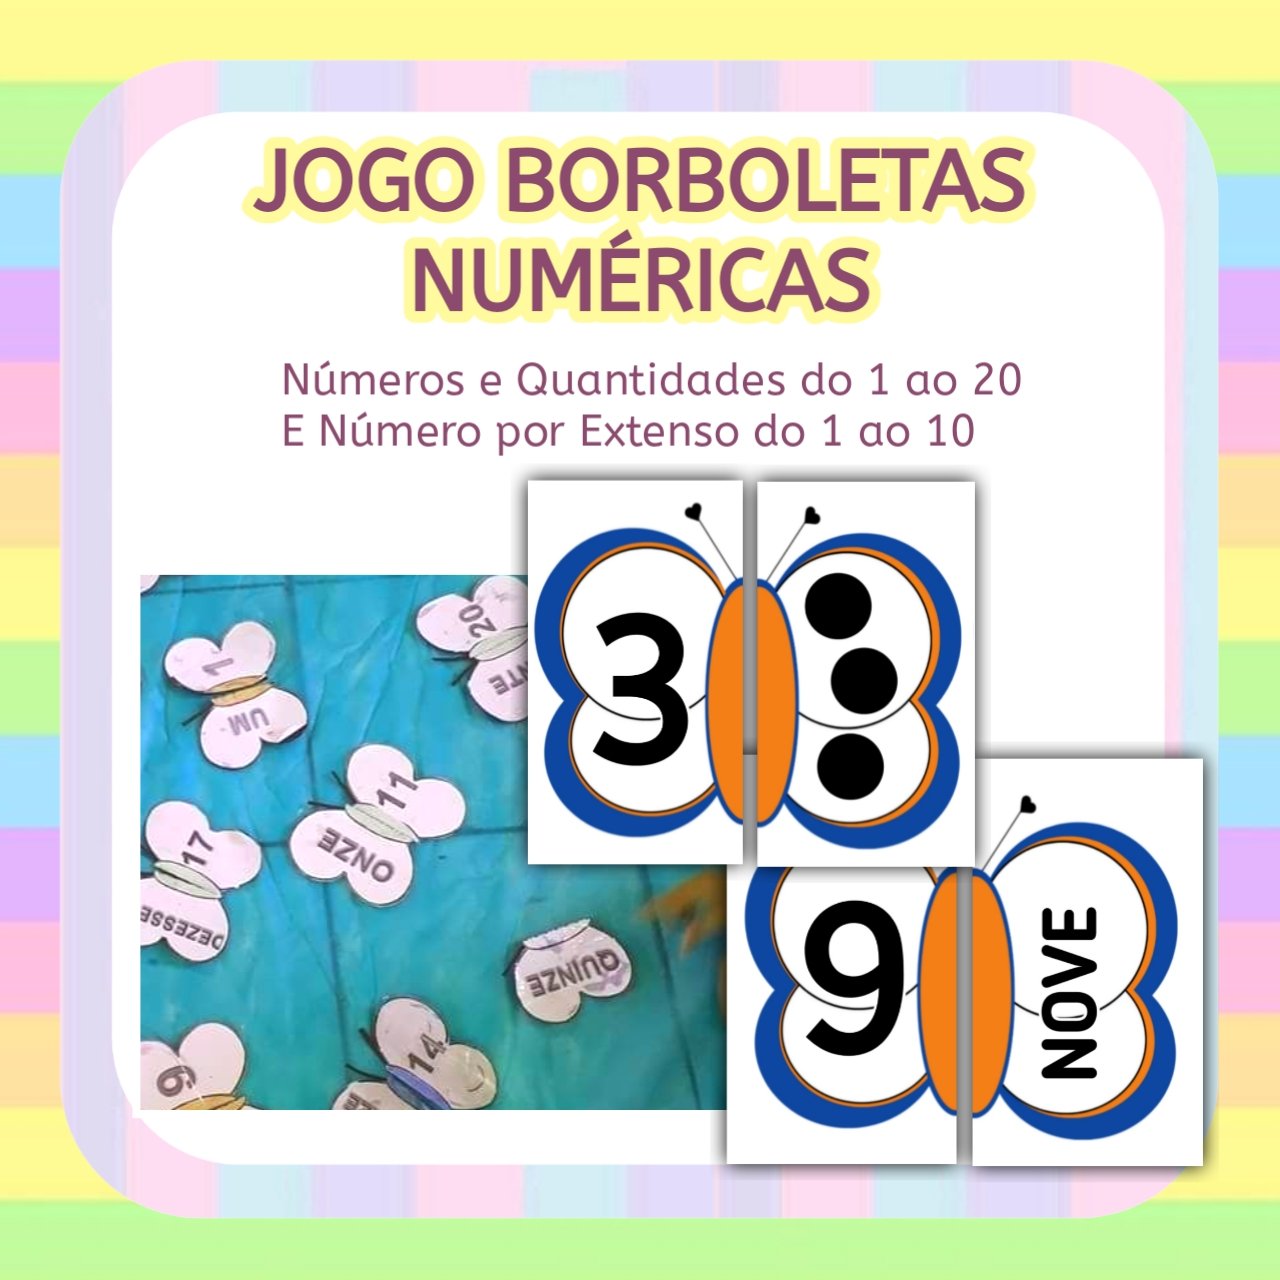 Jogo da memória dos numerais de 1 ao 9